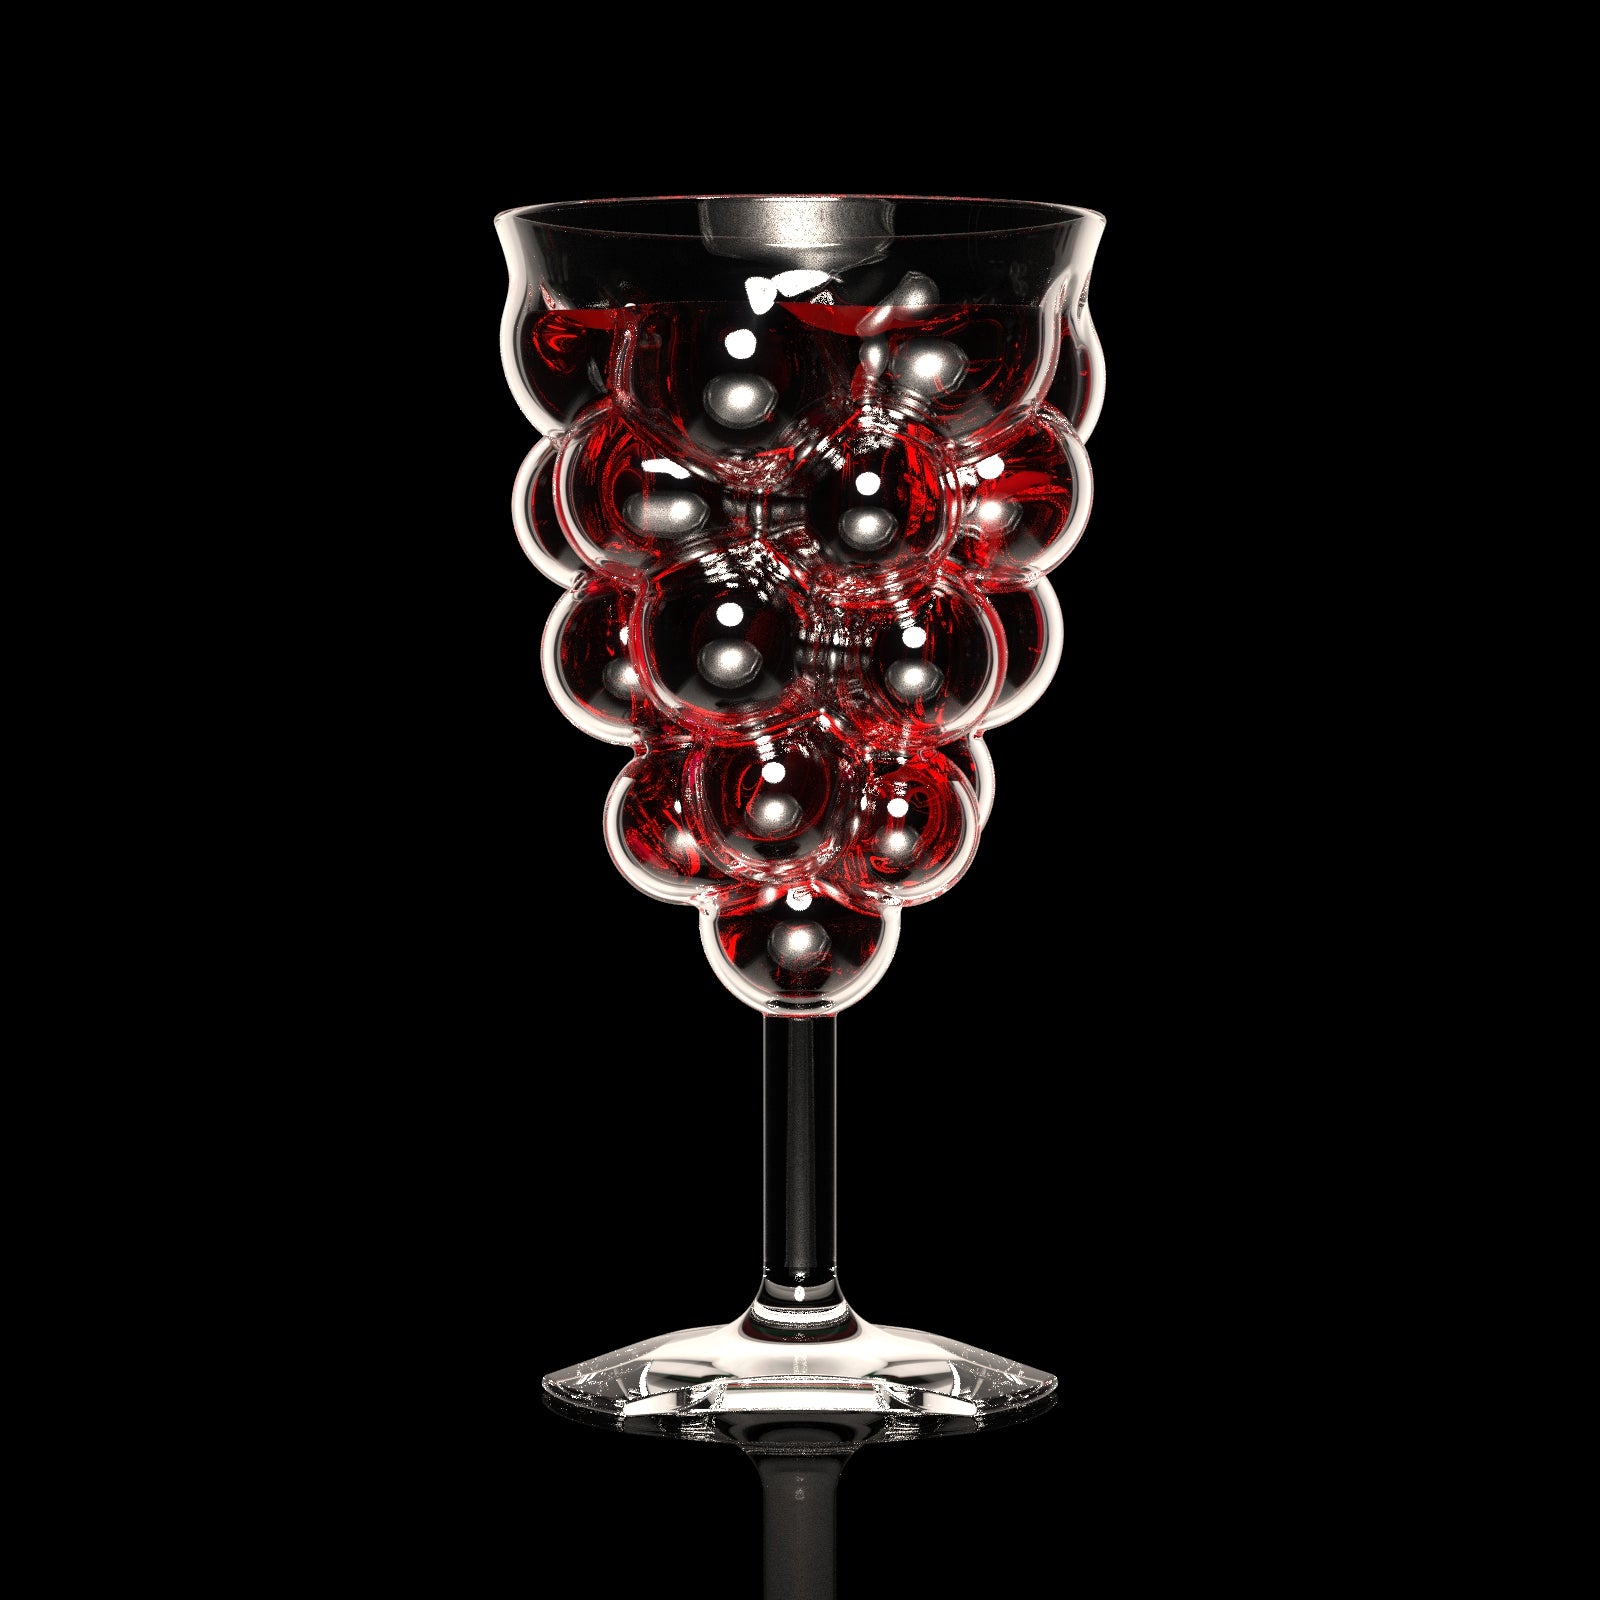 Dionysus Pinot Noir Crystal Wine Glasses